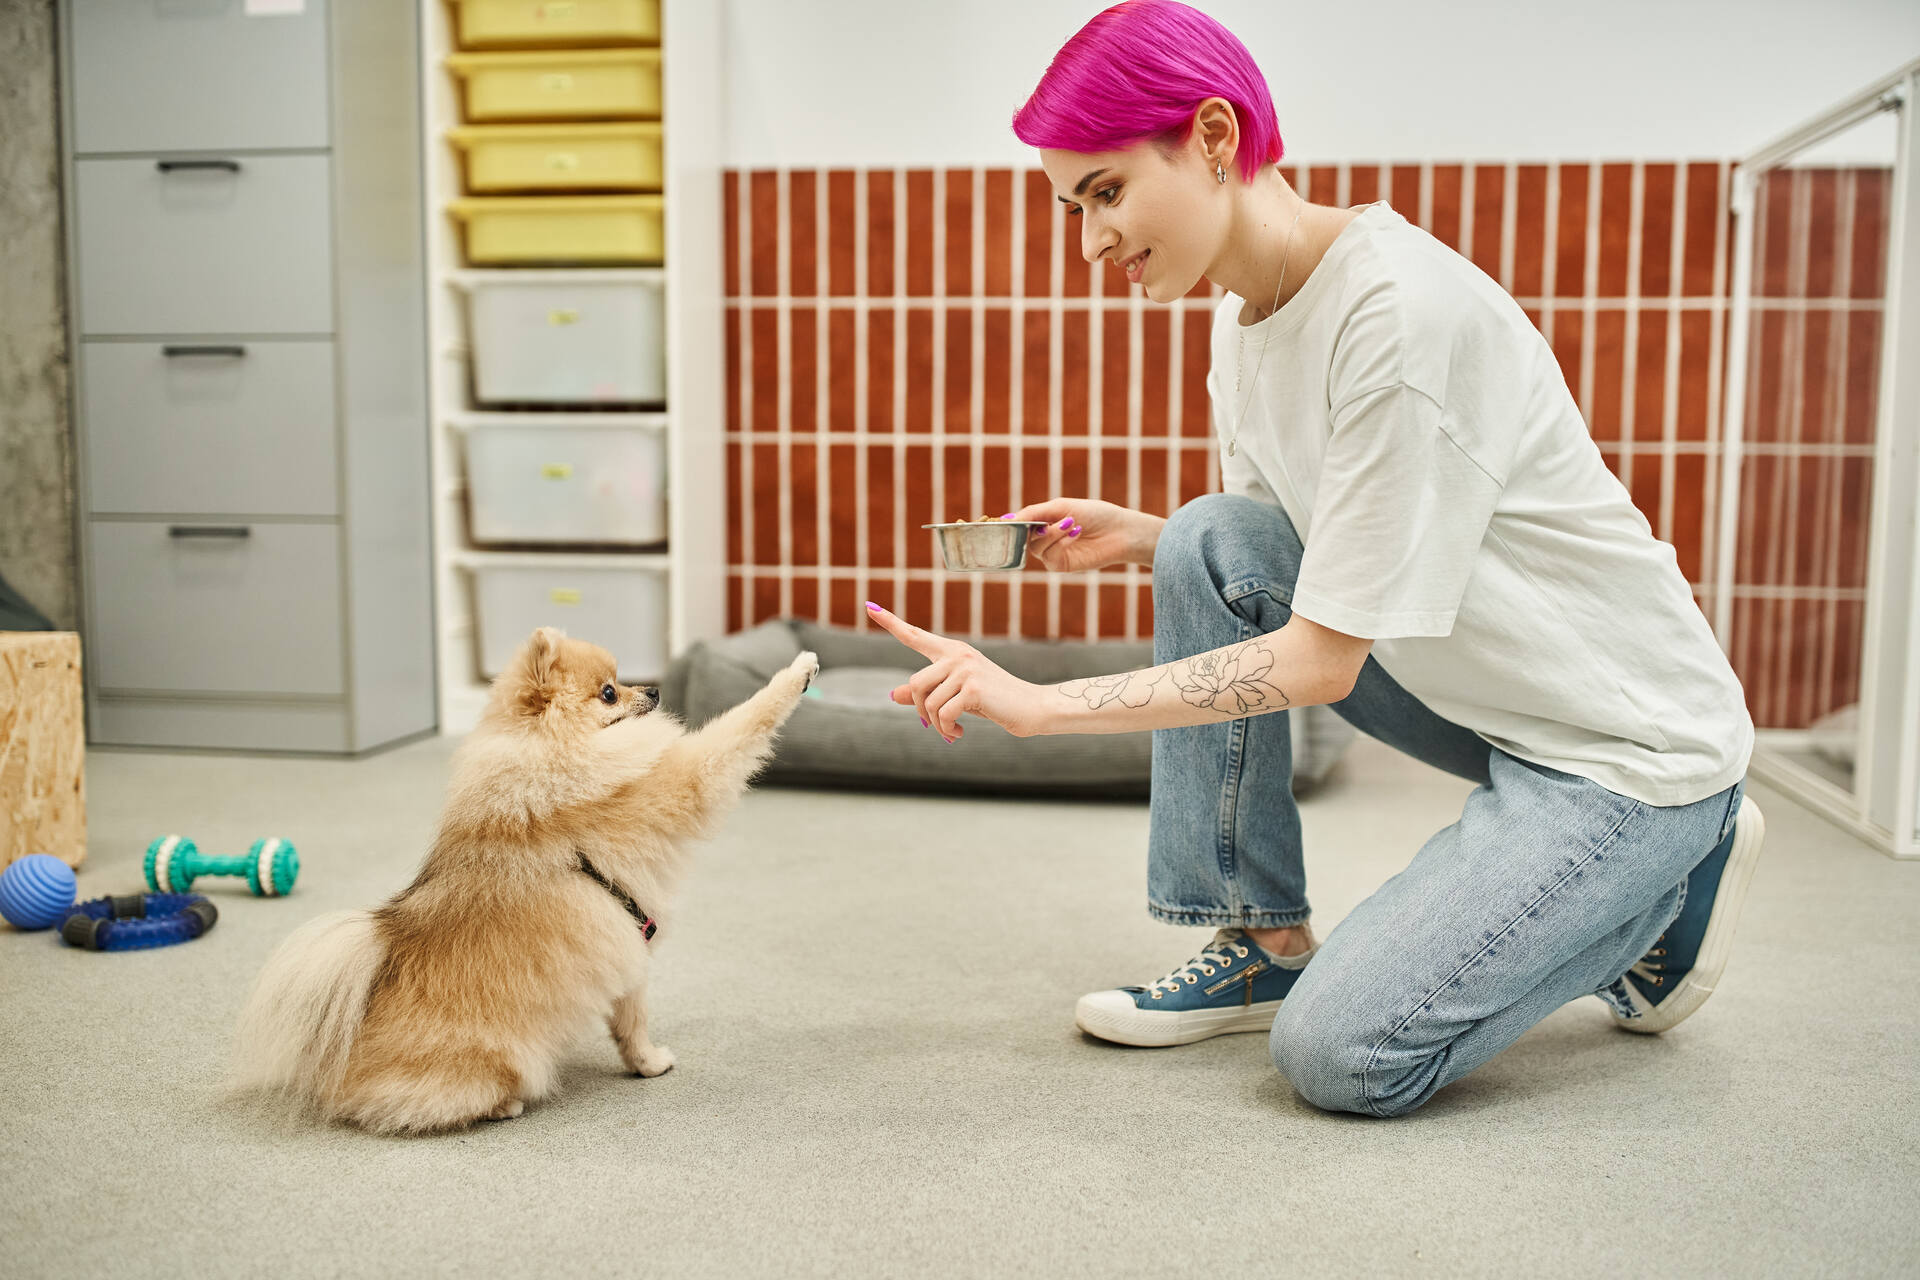 Frau trainiert mit kleinem Hund in einem Raum